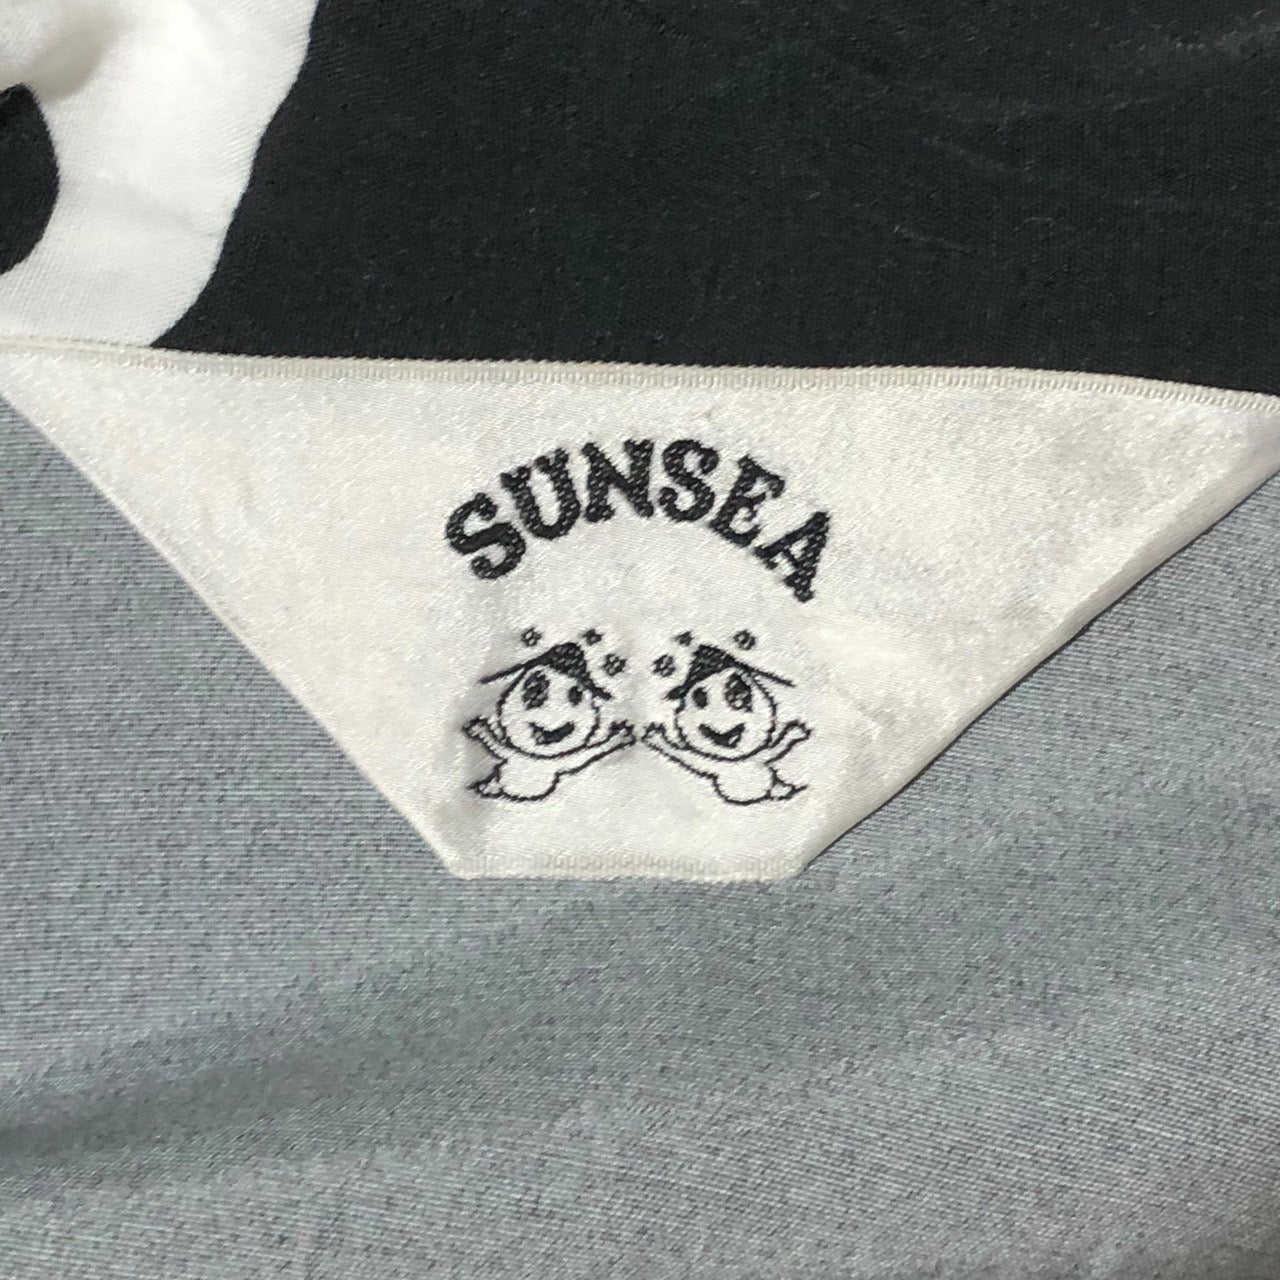 SUNSEA(サンシー) 19SS KEEF'S GIGOLO SHIRT キーフズジゴロシャツ スカル ドクロ 19S13 SIZE 2(M) ブラック×ホワイト 擦れキズ有